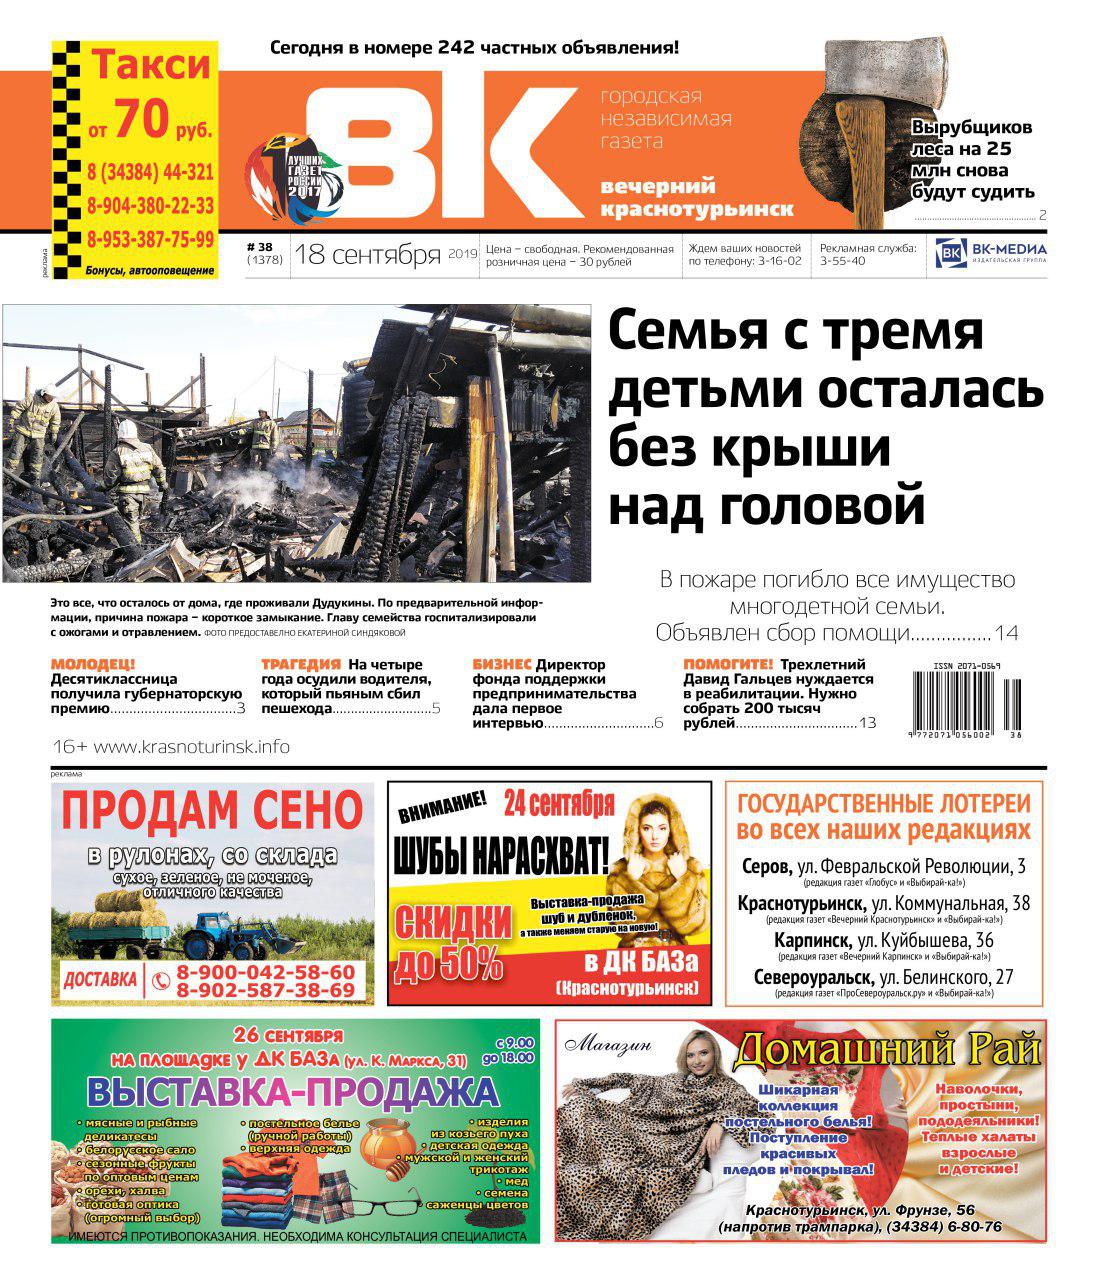 Пожар в поселке Белка, интервью «главного по бизнесу» в Краснотурьинске, наказания за смертельные ДТП – читайте свежую «Вечерку»